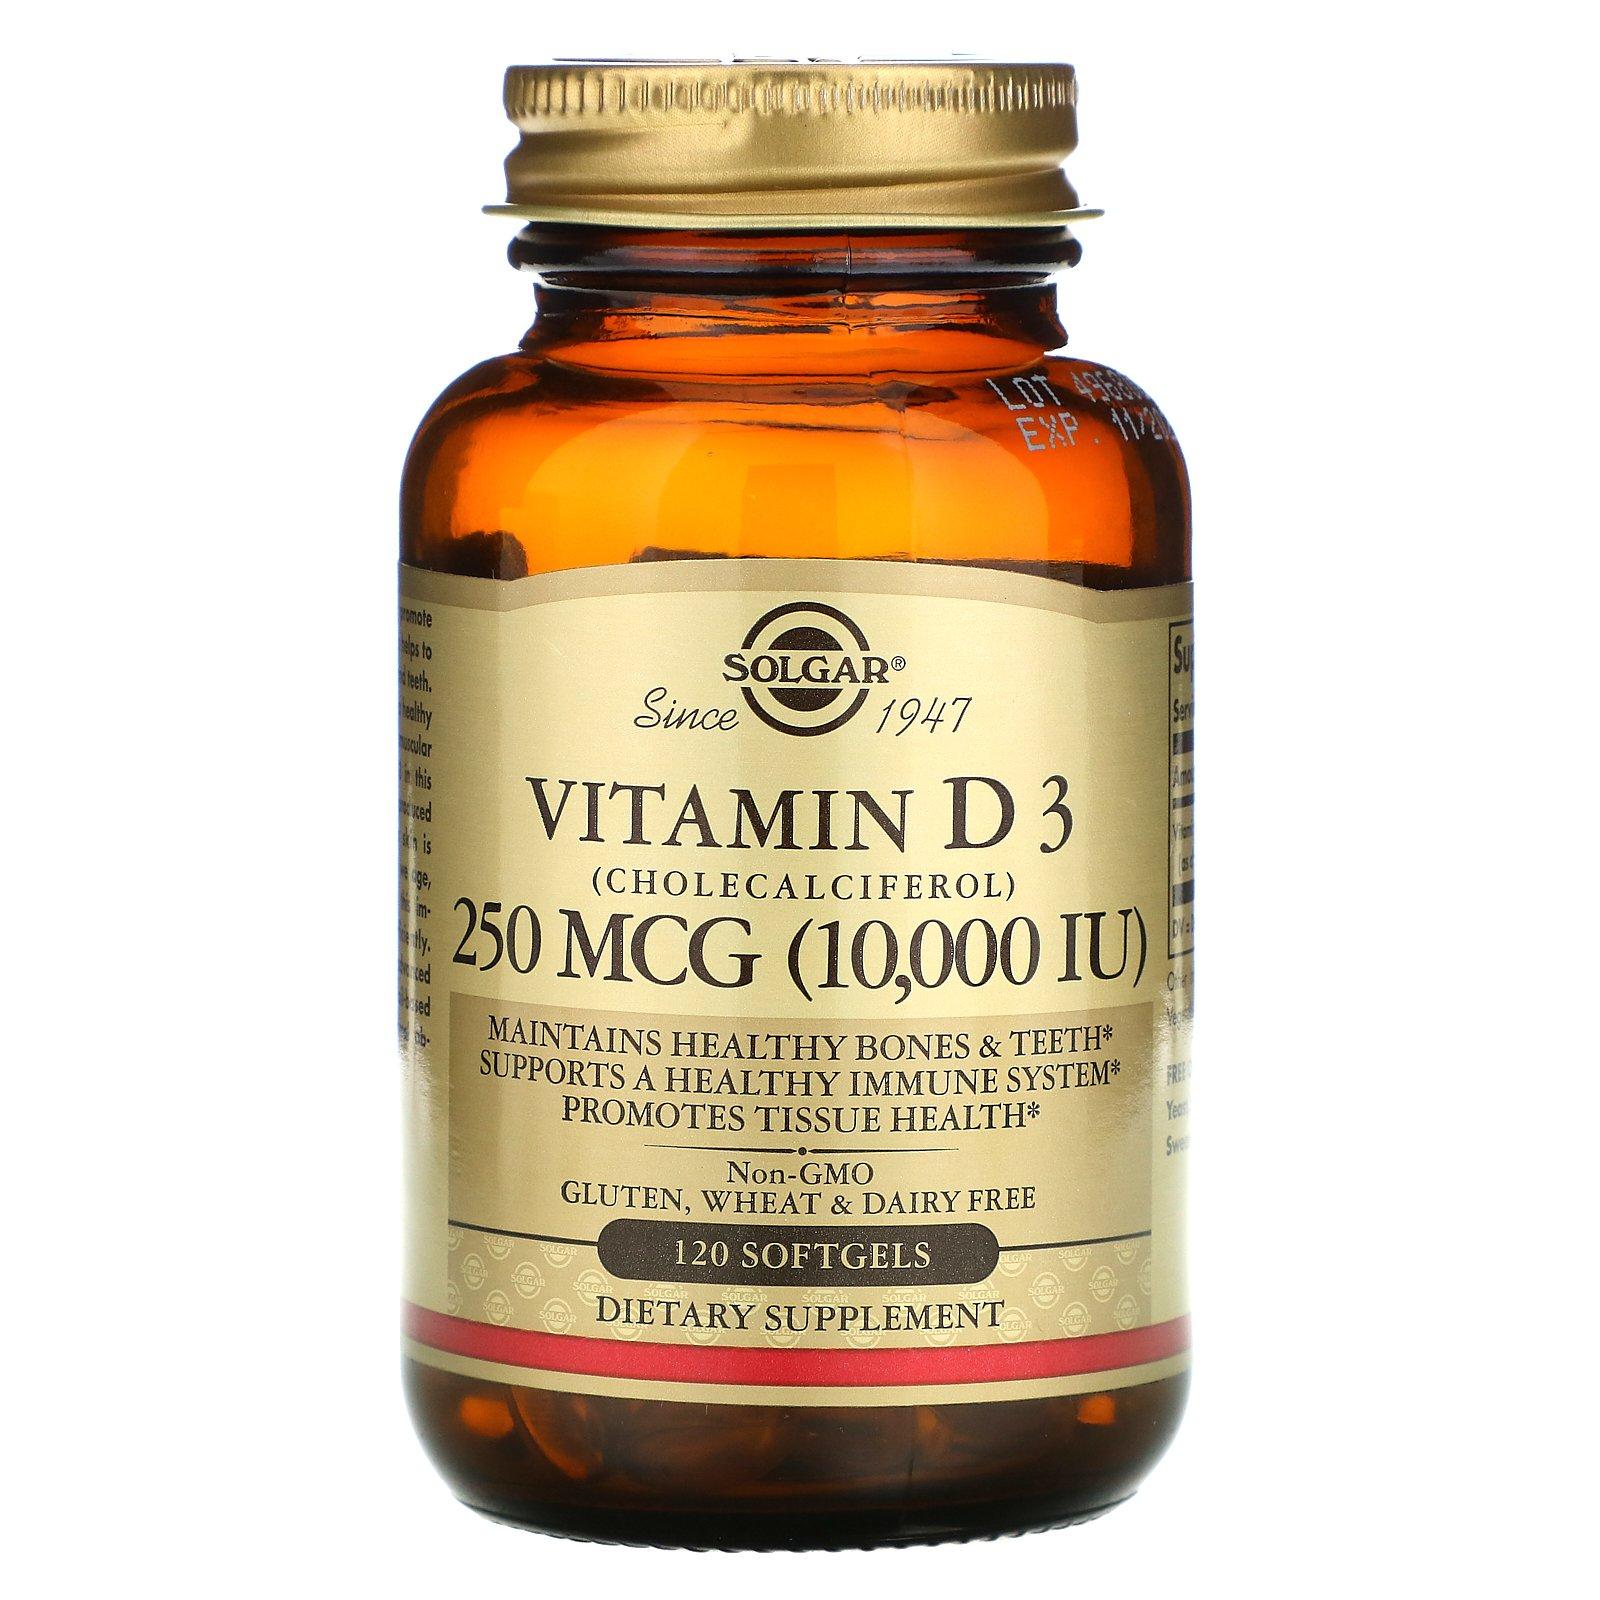 Solgar vitamin D3